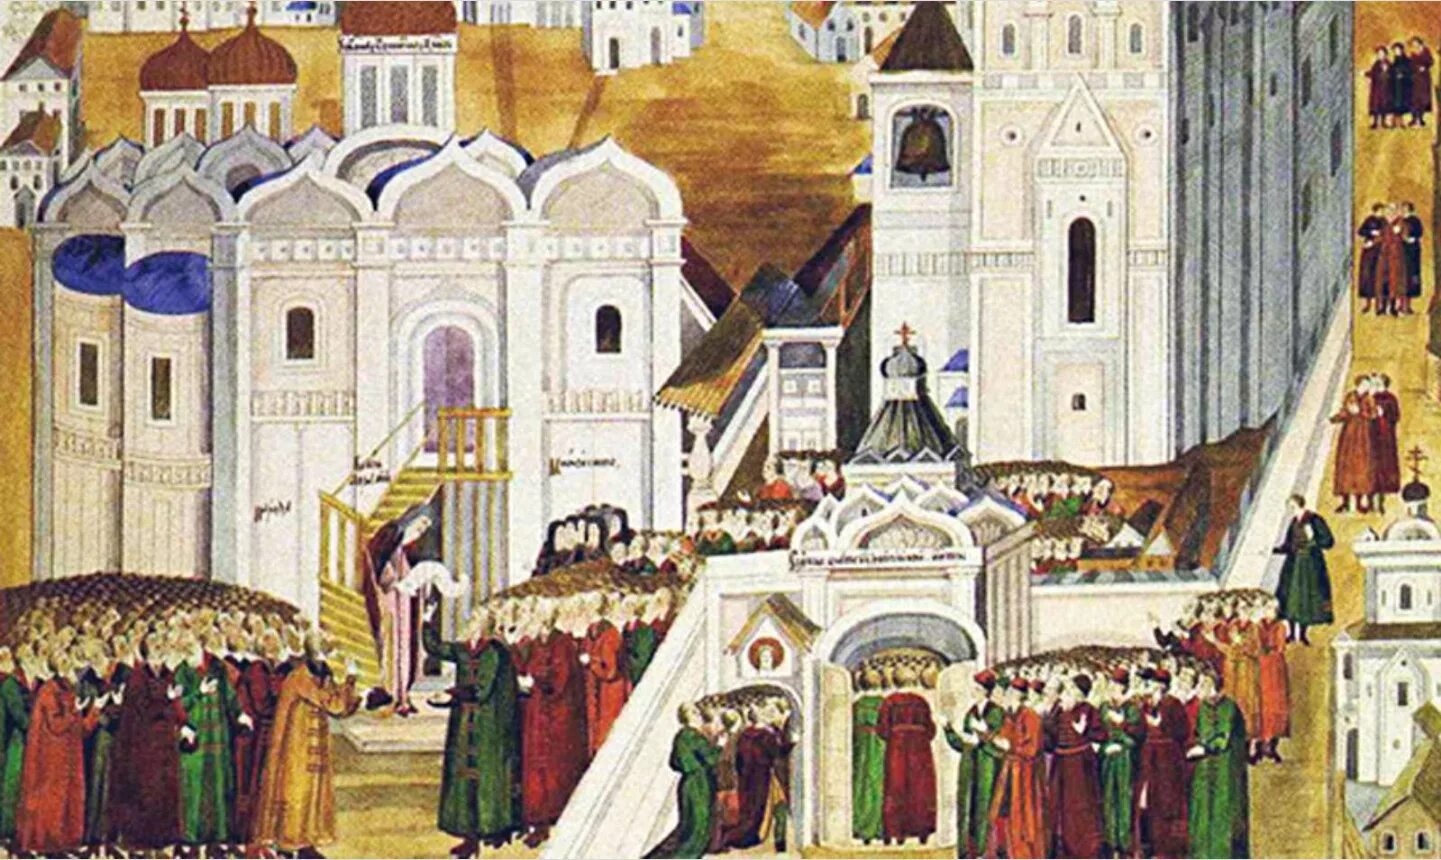 Образование совета всея земли. Ипатьевский монастырь 1613 год.